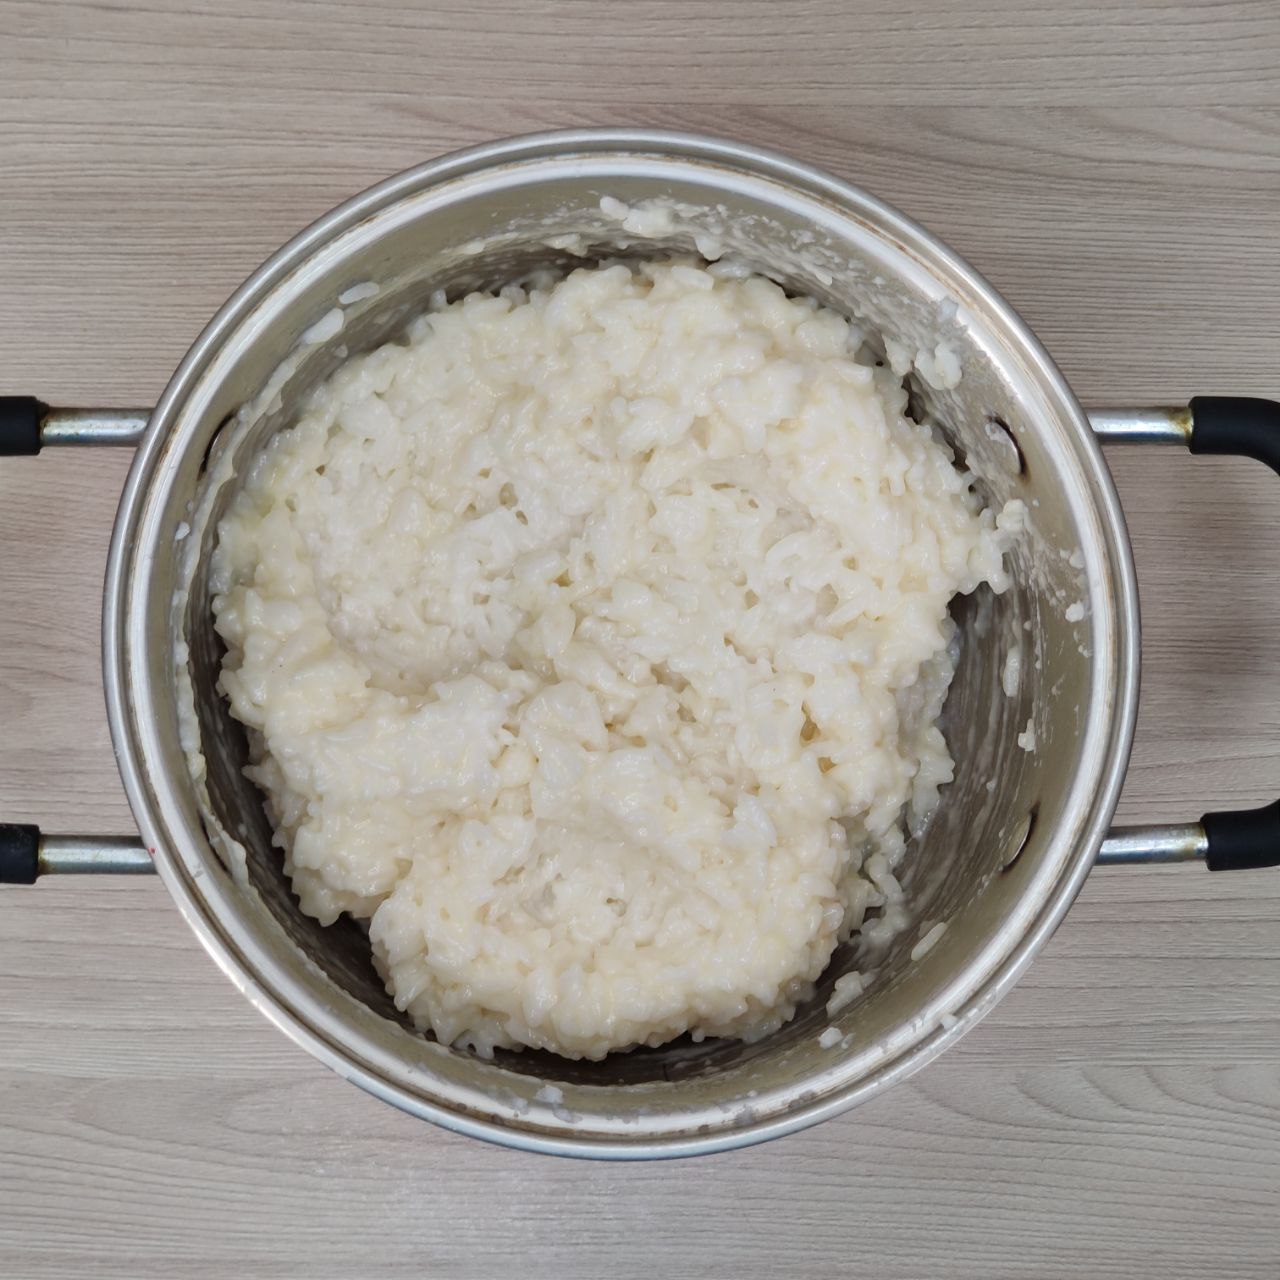 рисовая запеканка из готового длиннозёрного риса – 5 шаг